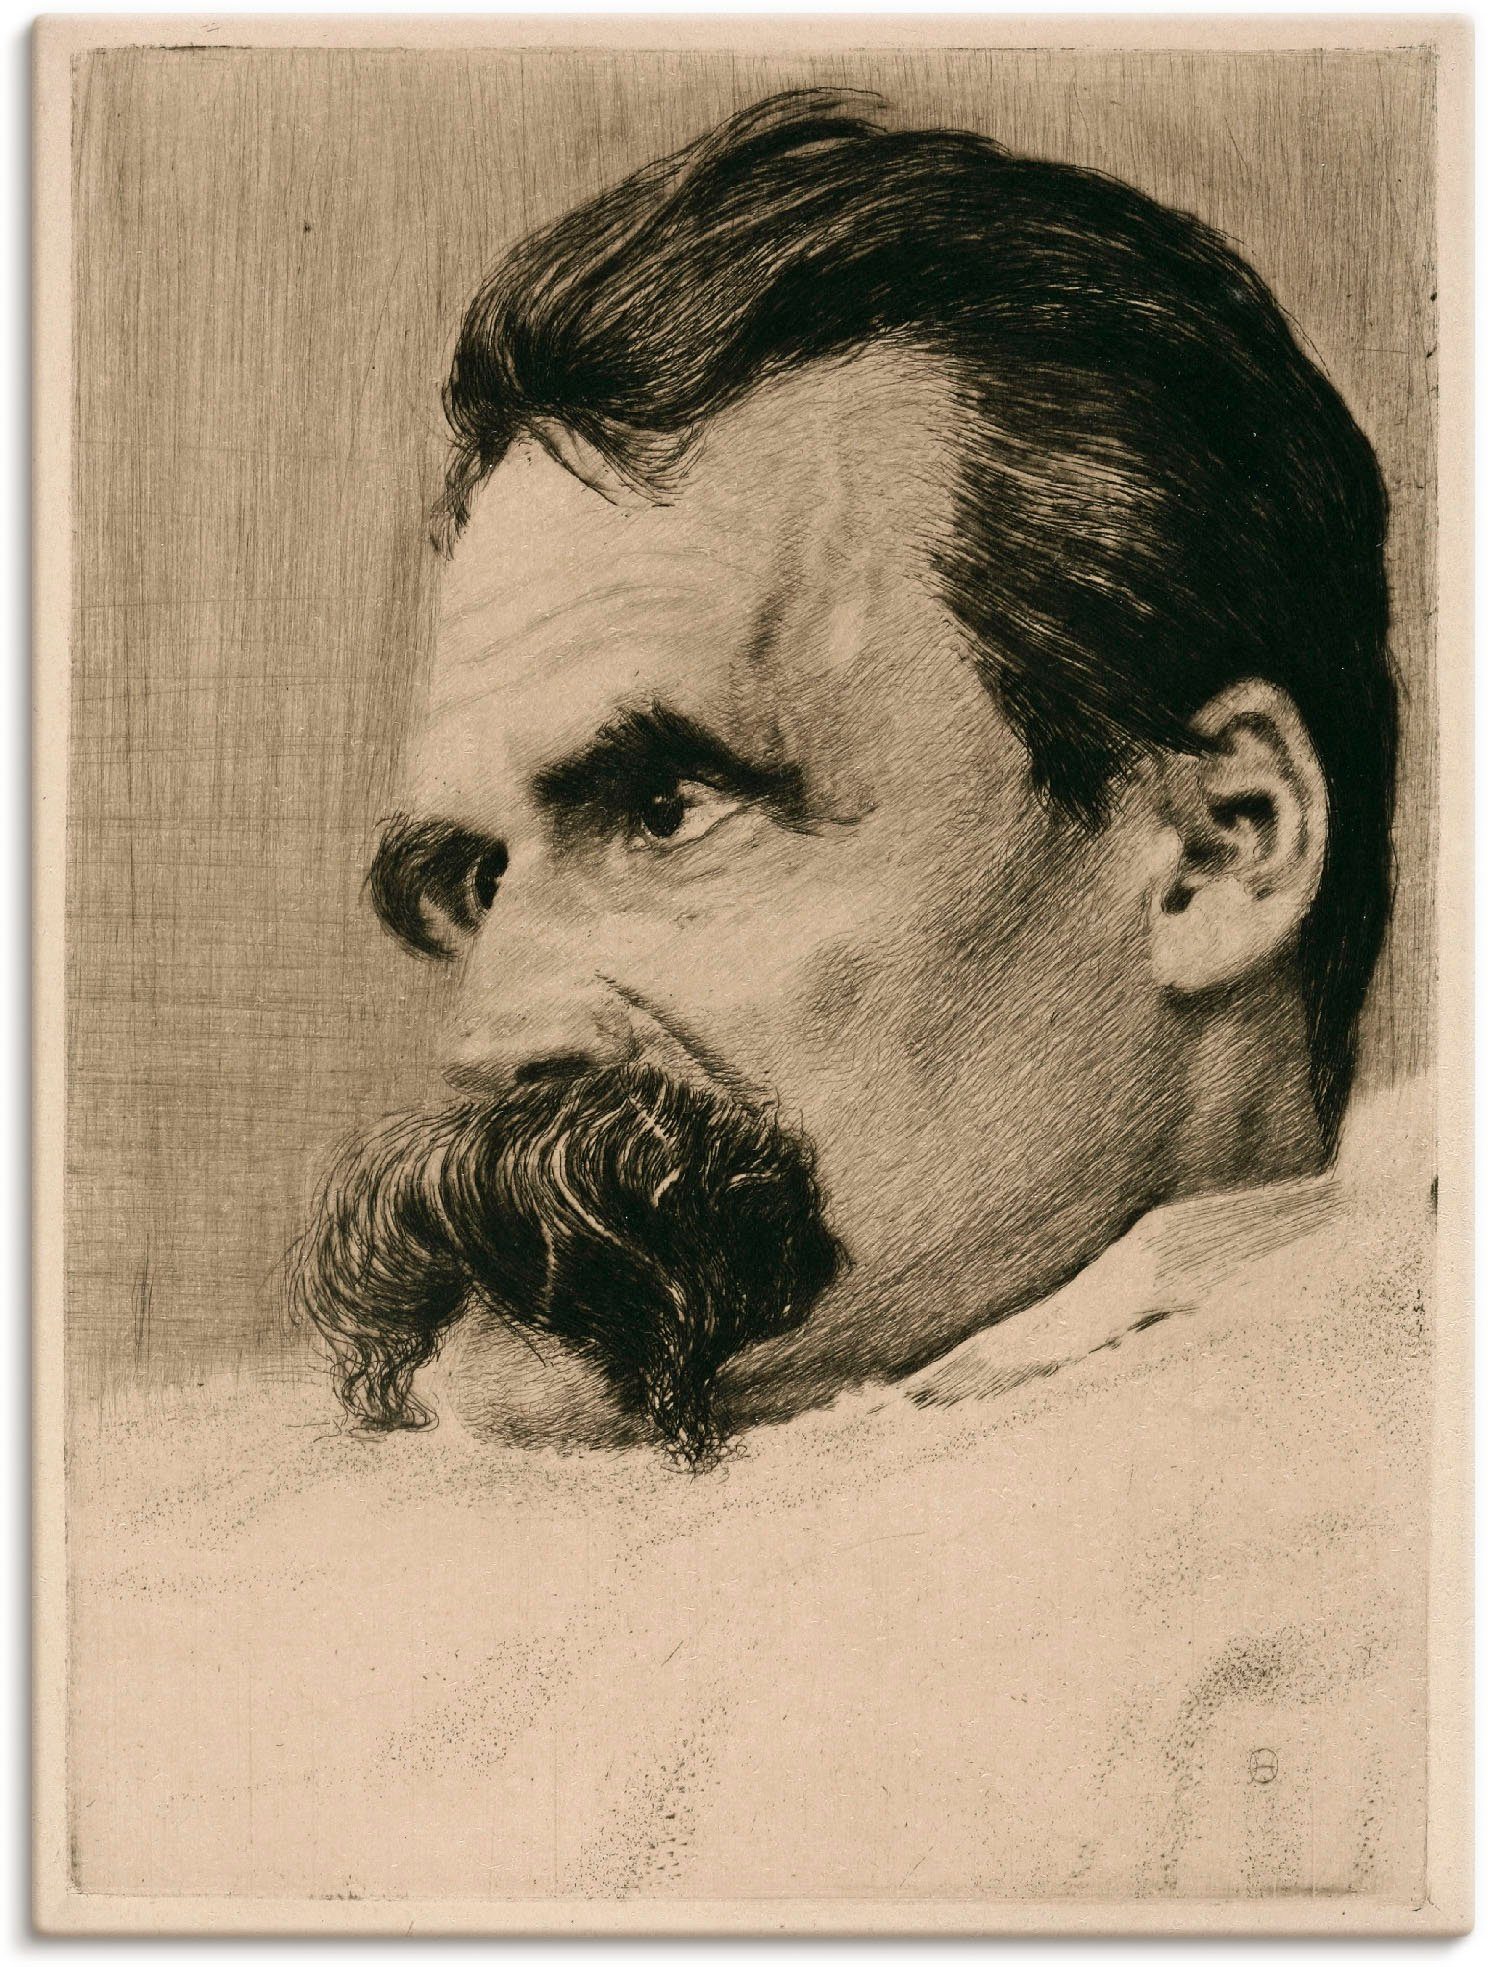 Artland Artprint Friedrich Nietzsche. 1899 in vele afmetingen & productsoorten -artprint op linnen, poster, muursticker / wandfolie ook geschikt voor de badkamer (1 stuk)